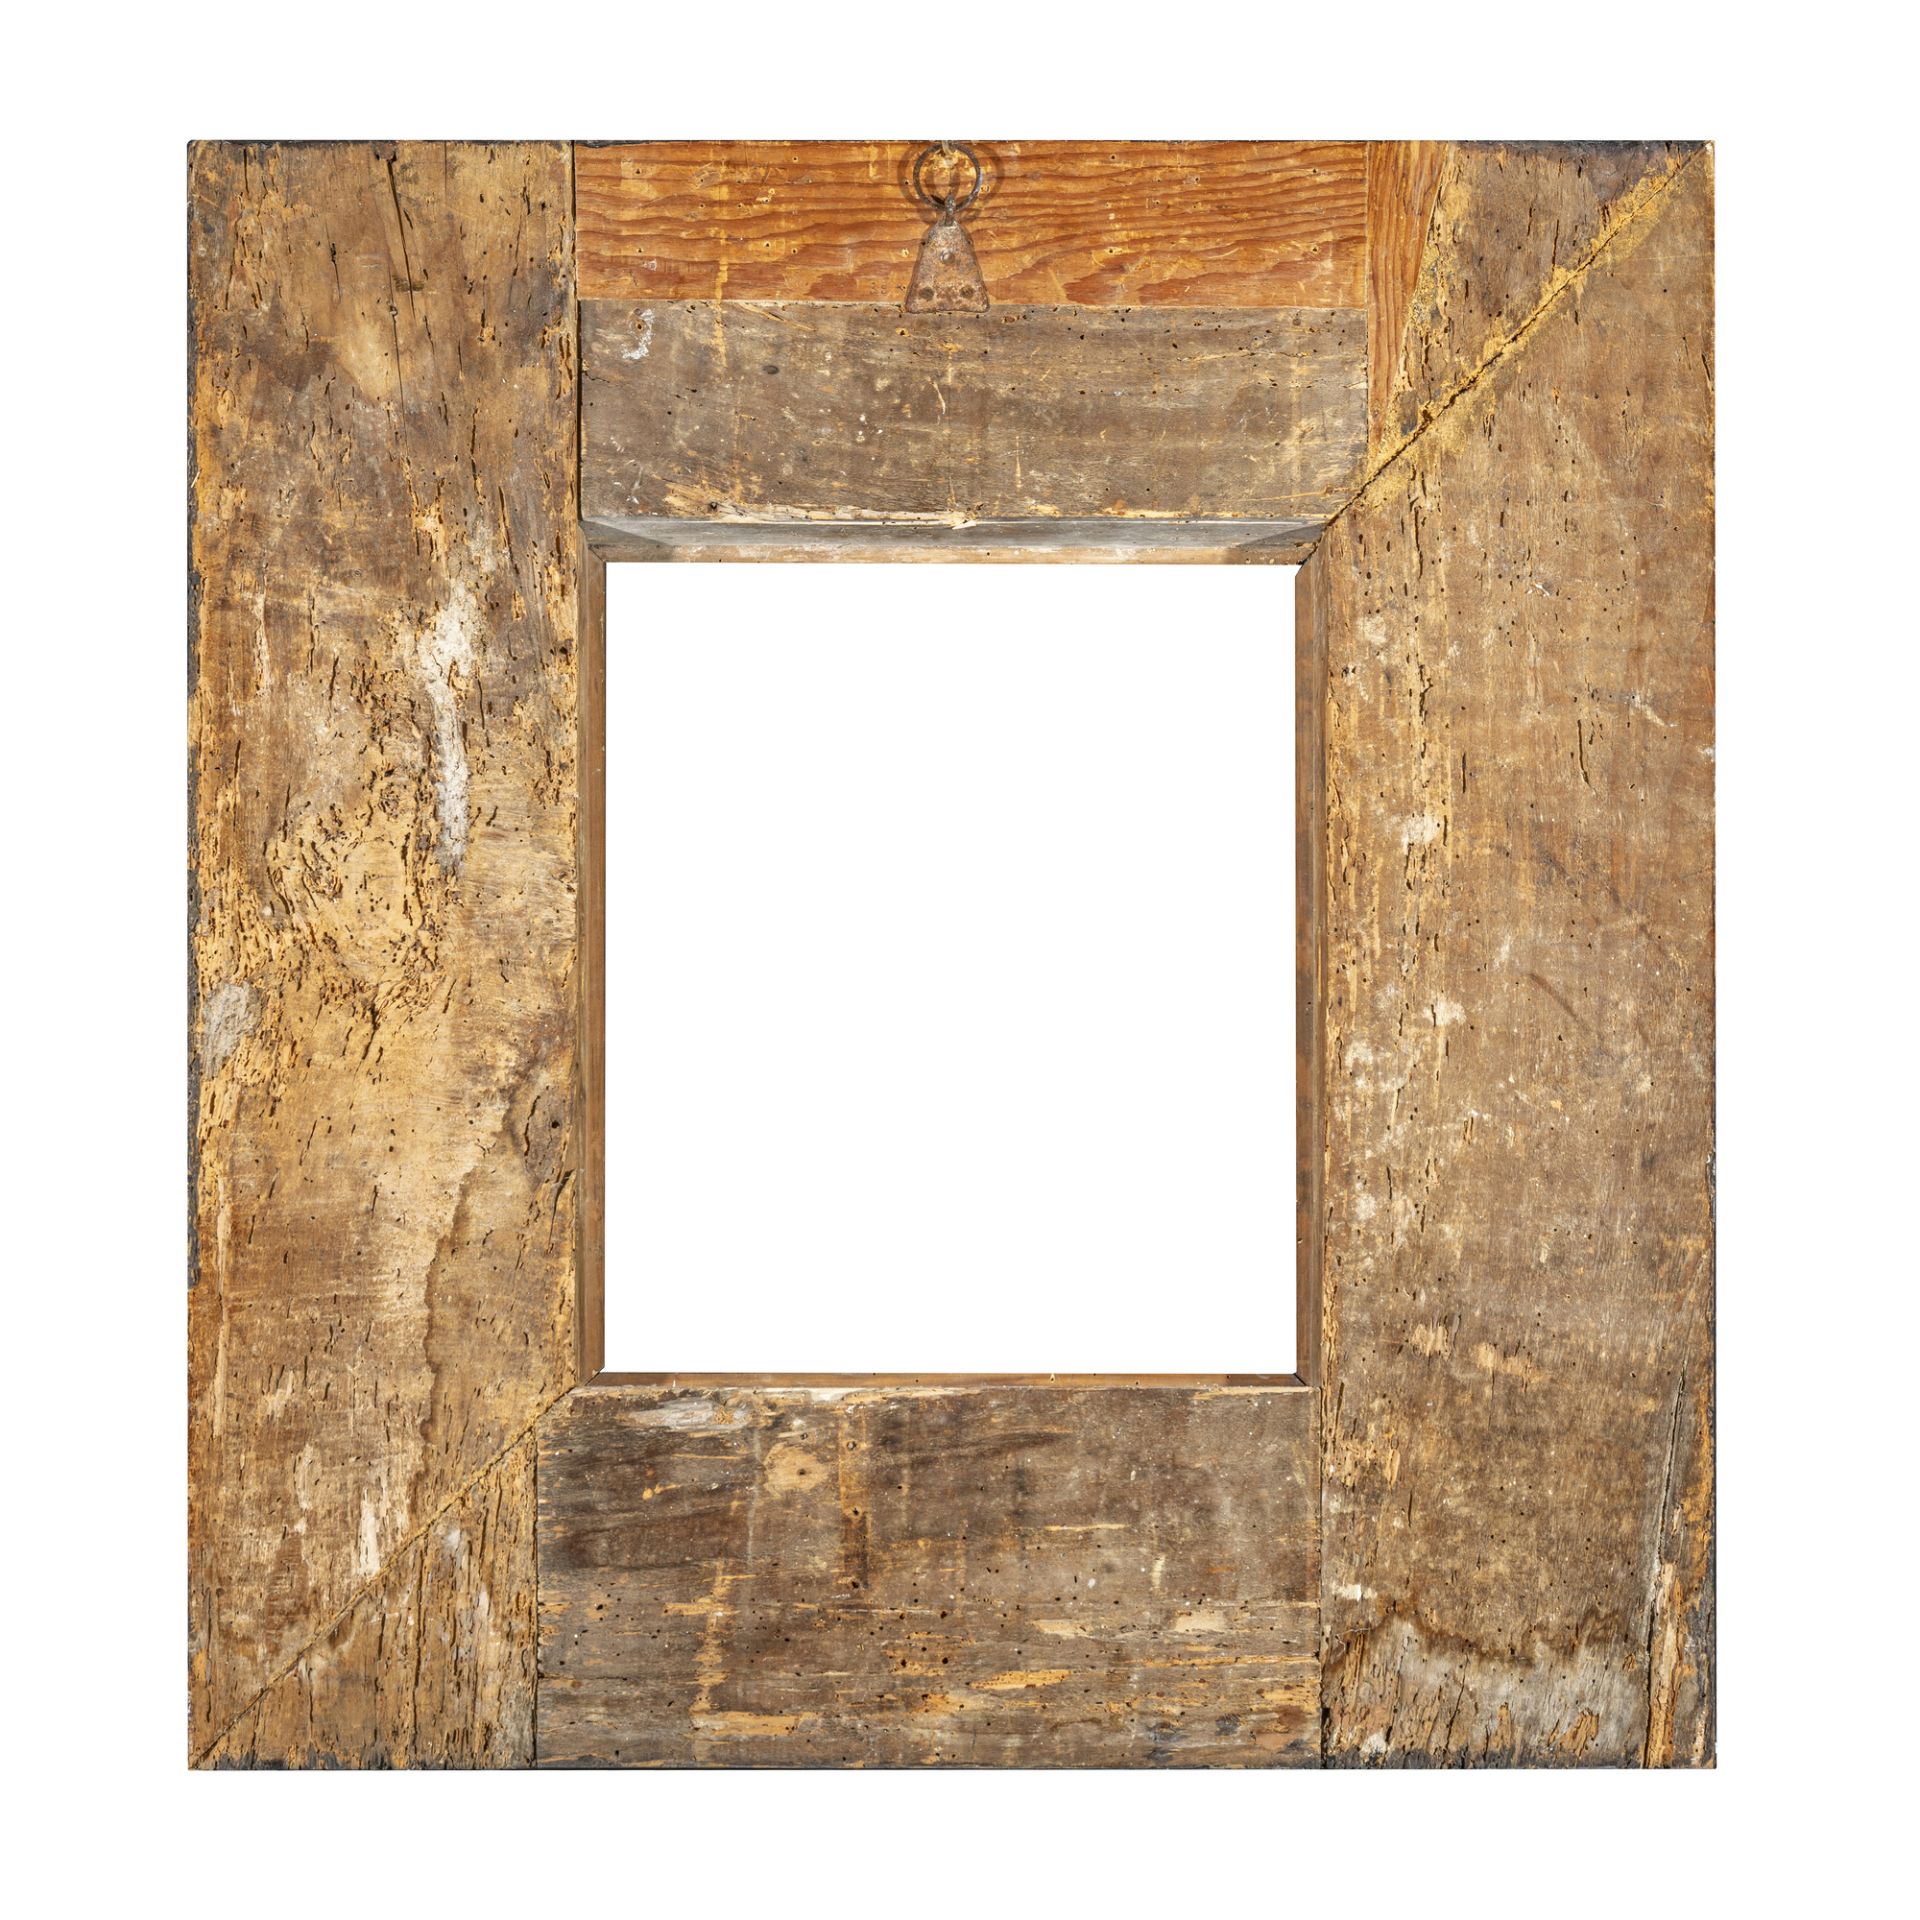 Cornice guilloche in legno ebanizzato - Image 3 of 3